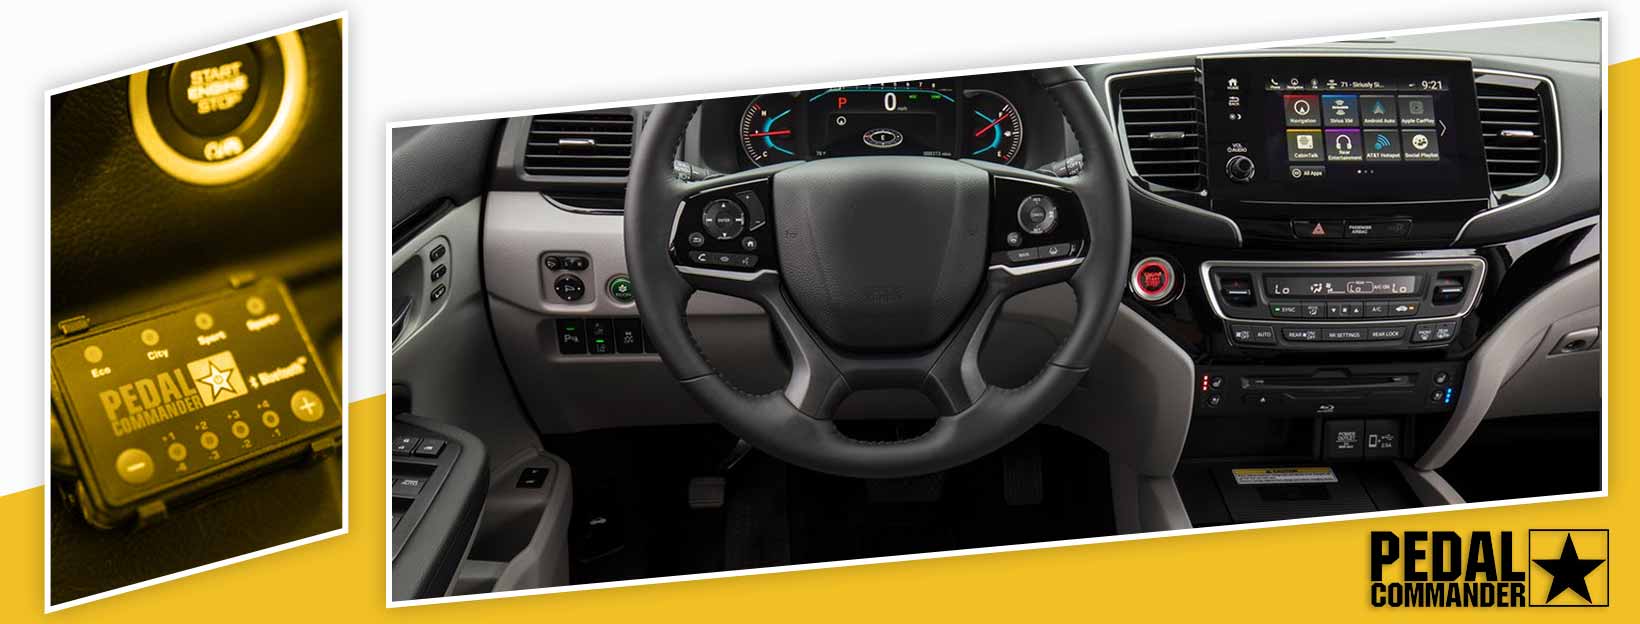 Pedal Commander for Honda Pilot - interior